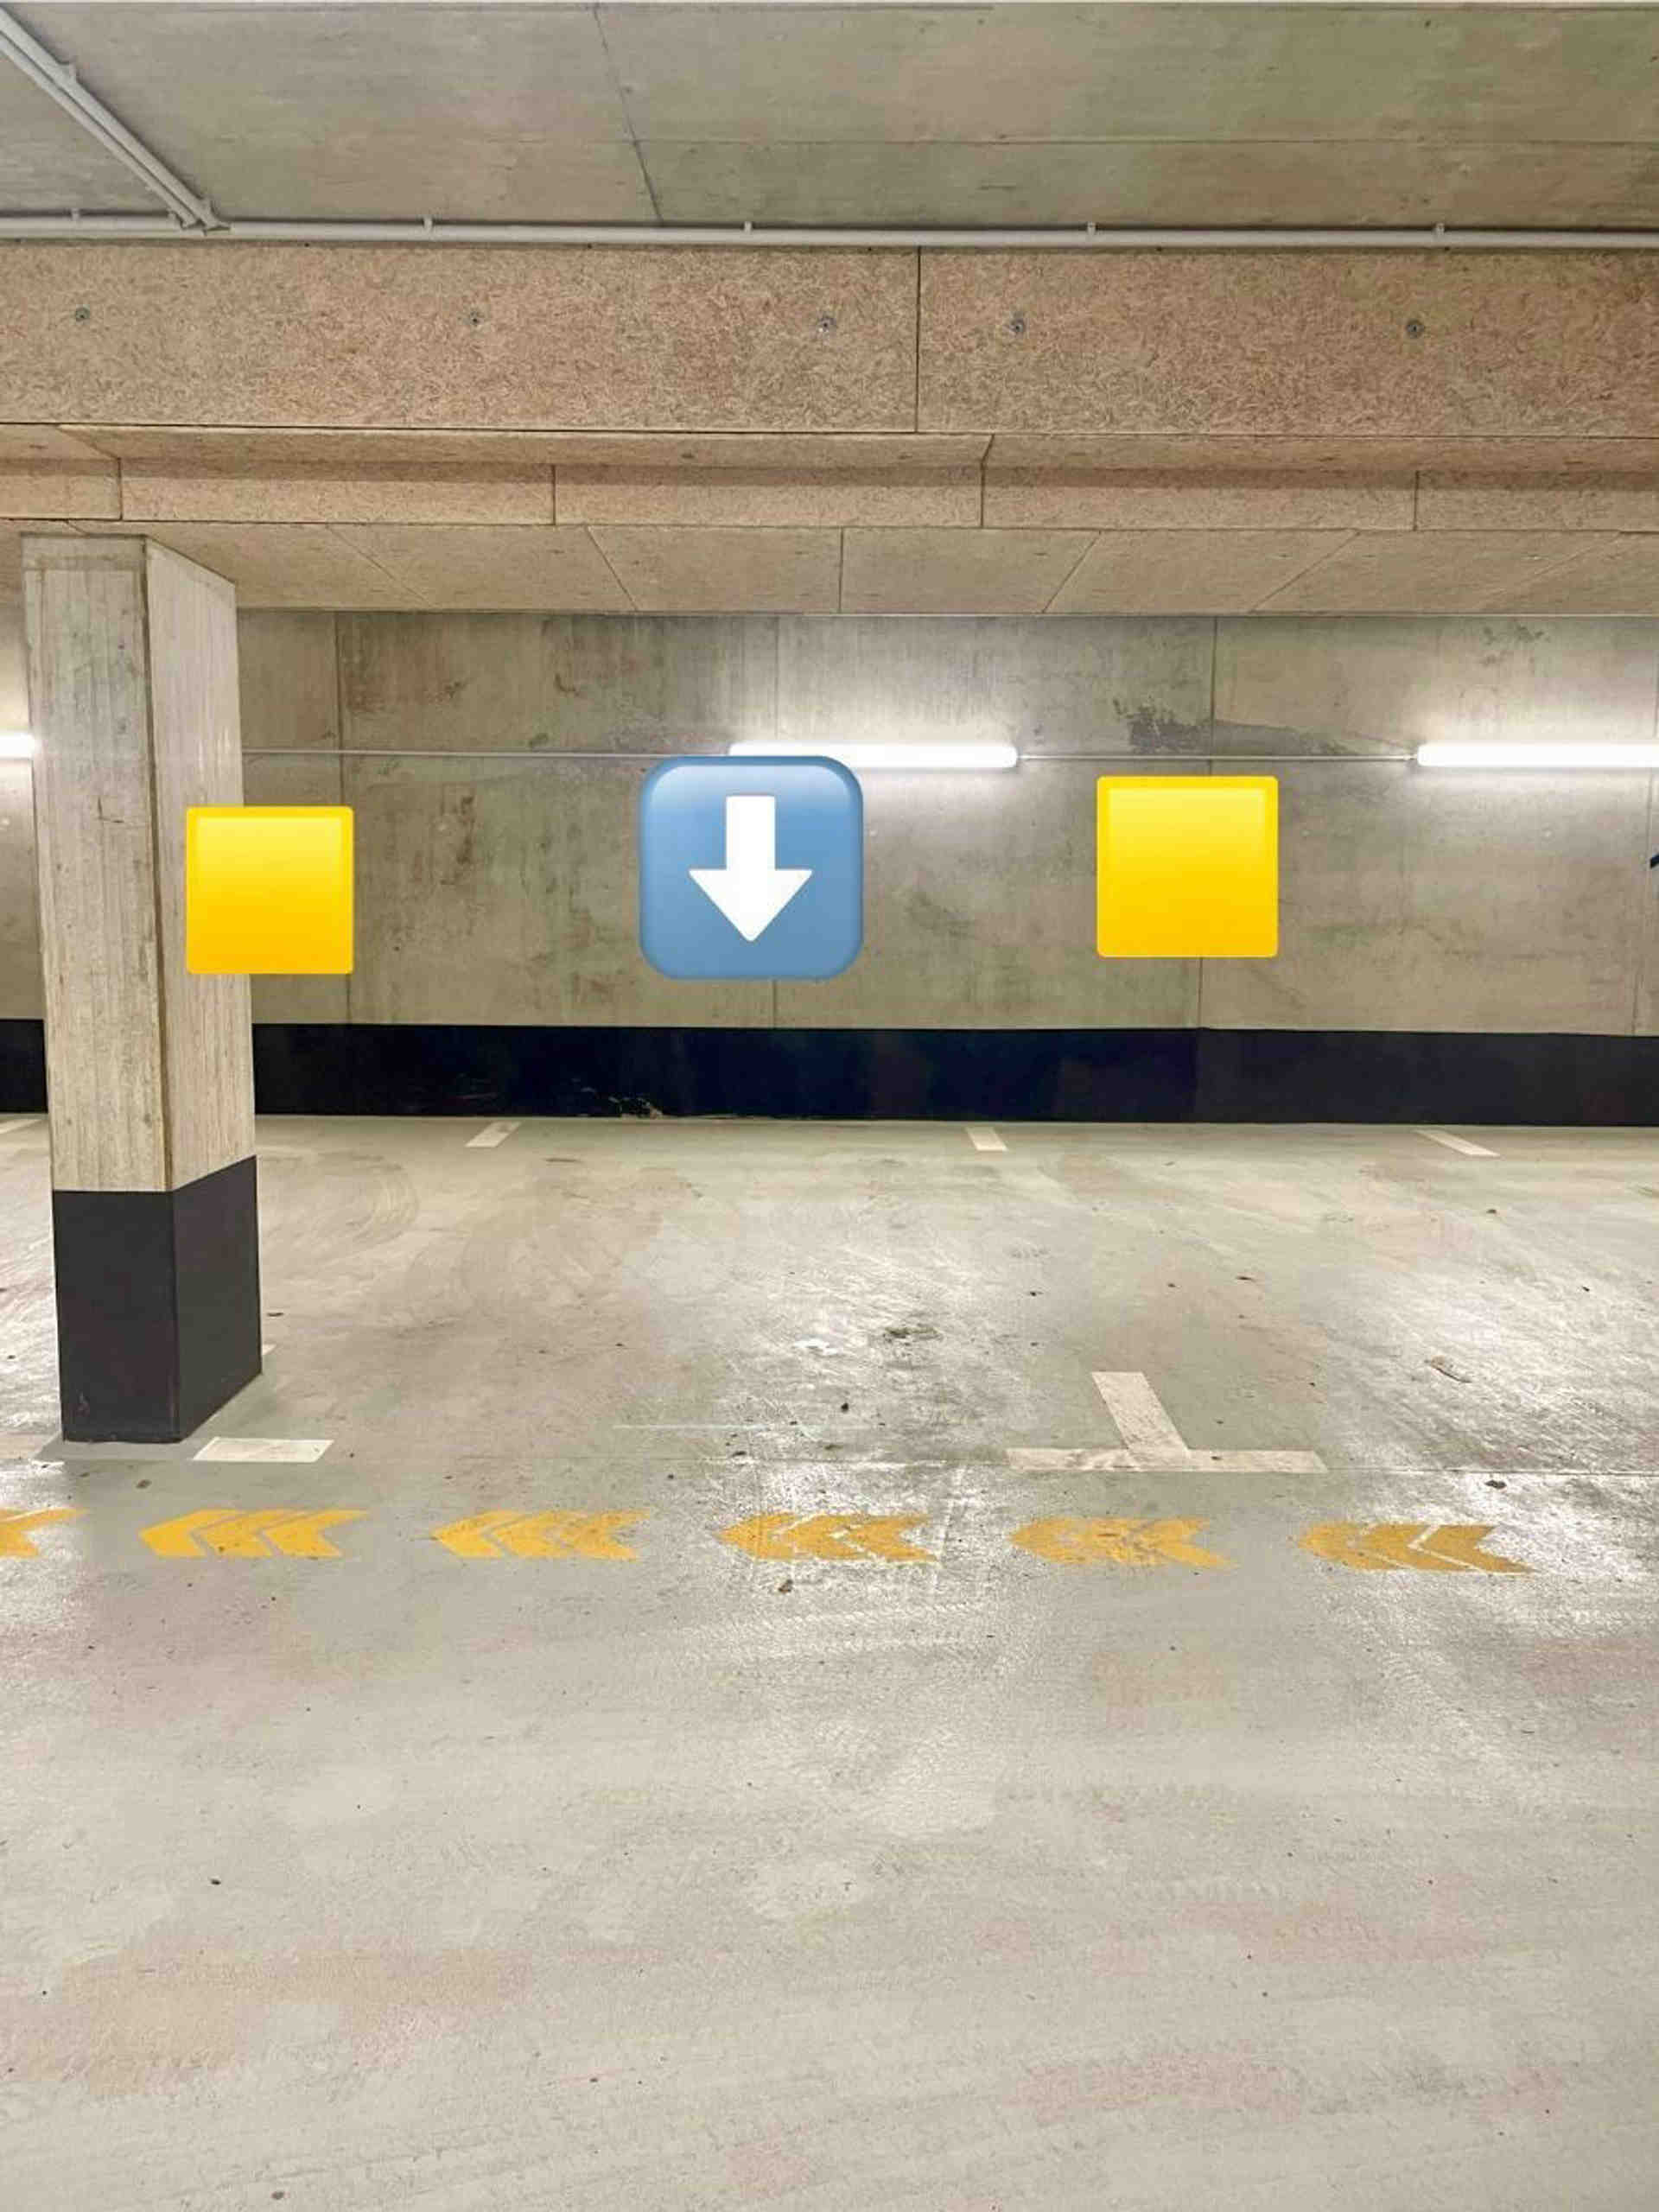 Podzemné parkovisko v Obersendlingu - Gmunder Straße, 81379 Mníchov - Fotka 1 z 4